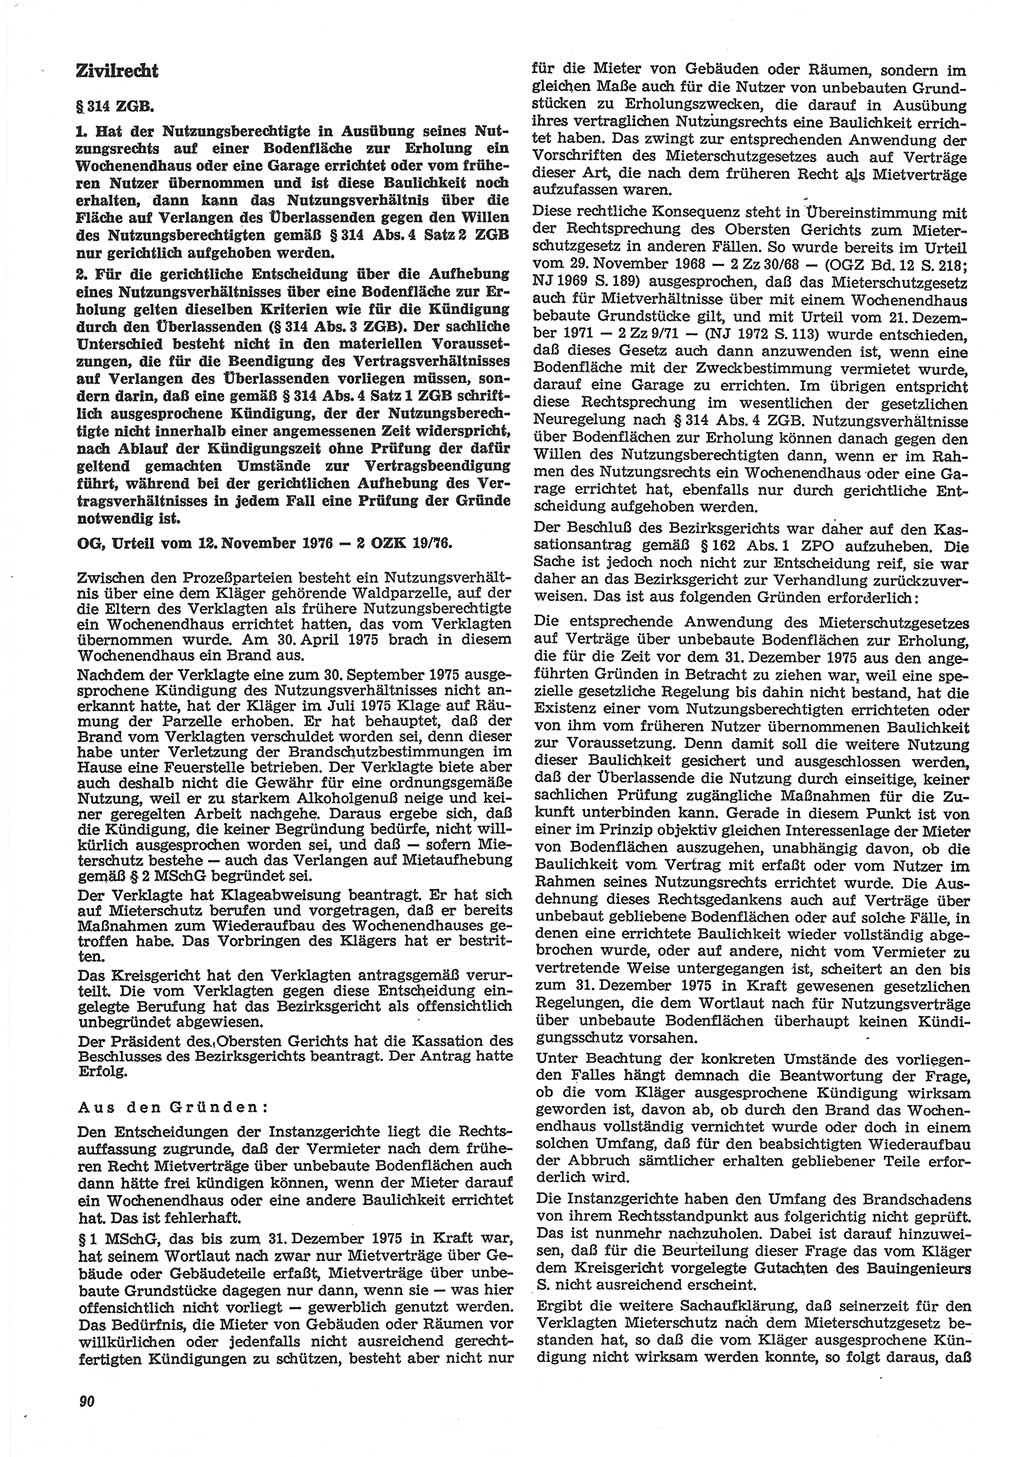 Neue Justiz (NJ), Zeitschrift für Recht und Rechtswissenschaft-Zeitschrift, sozialistisches Recht und Gesetzlichkeit, 31. Jahrgang 1977, Seite 90 (NJ DDR 1977, S. 90)